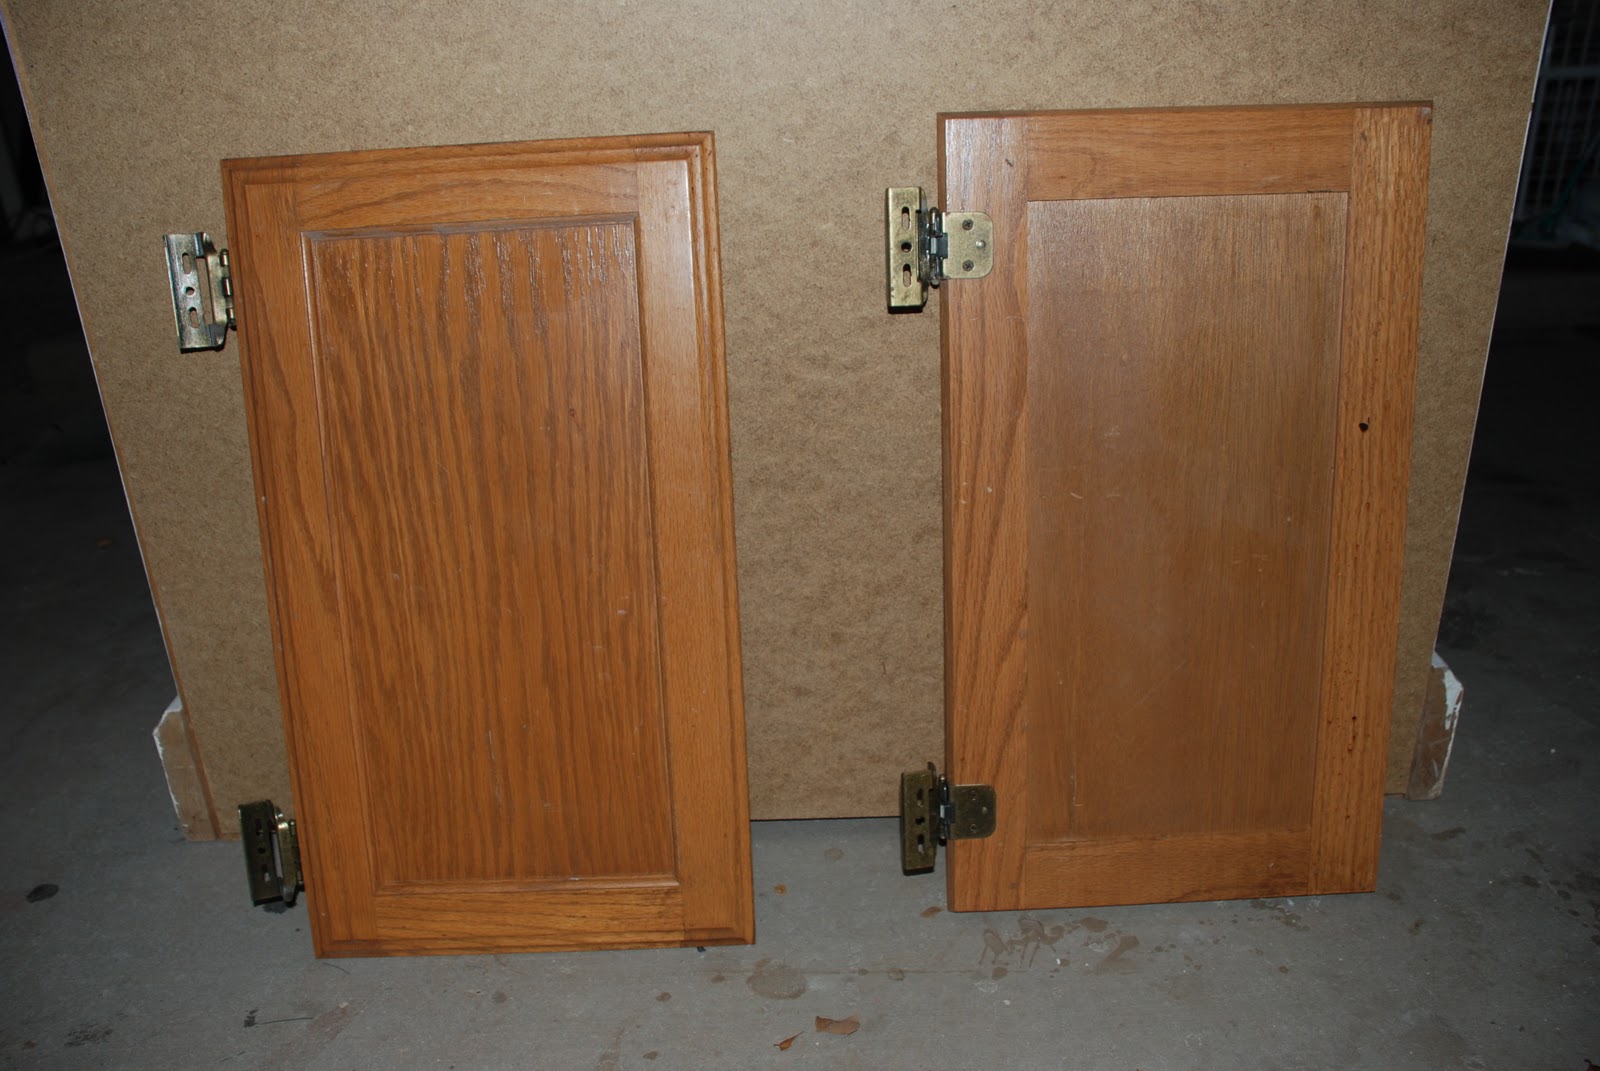 In De Stress Mode Repurposed Cabinet Doors